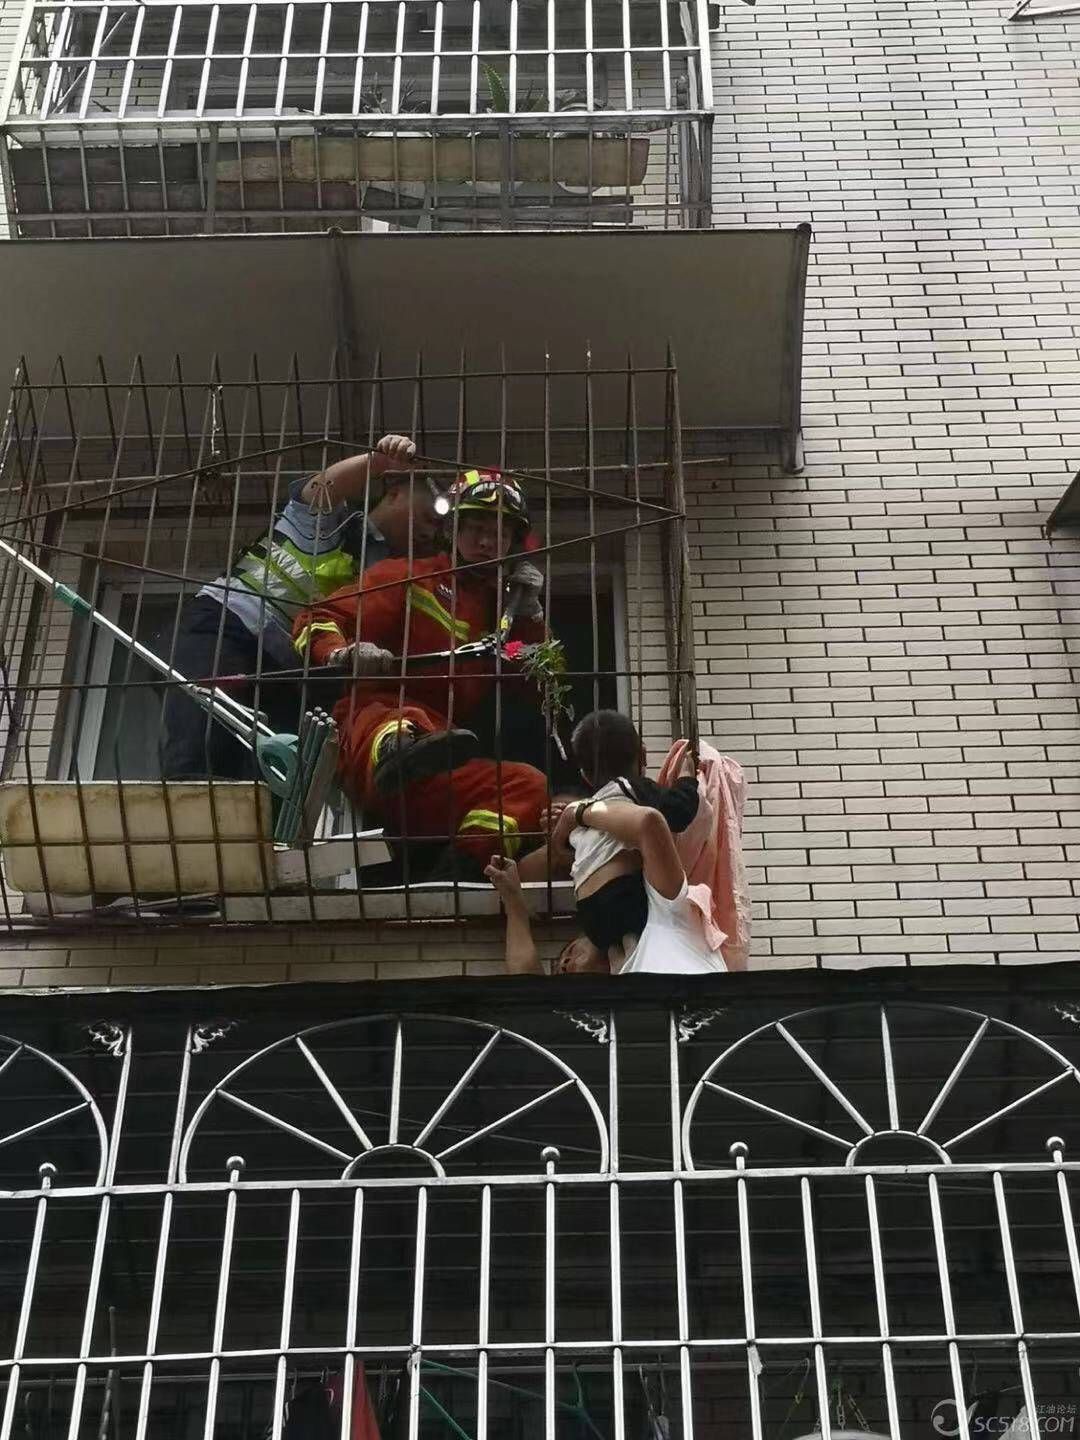 孩子|两岁孩子爬窗台寻找父母头部被卡防护栏 警民联手6分钟救出被困小孩